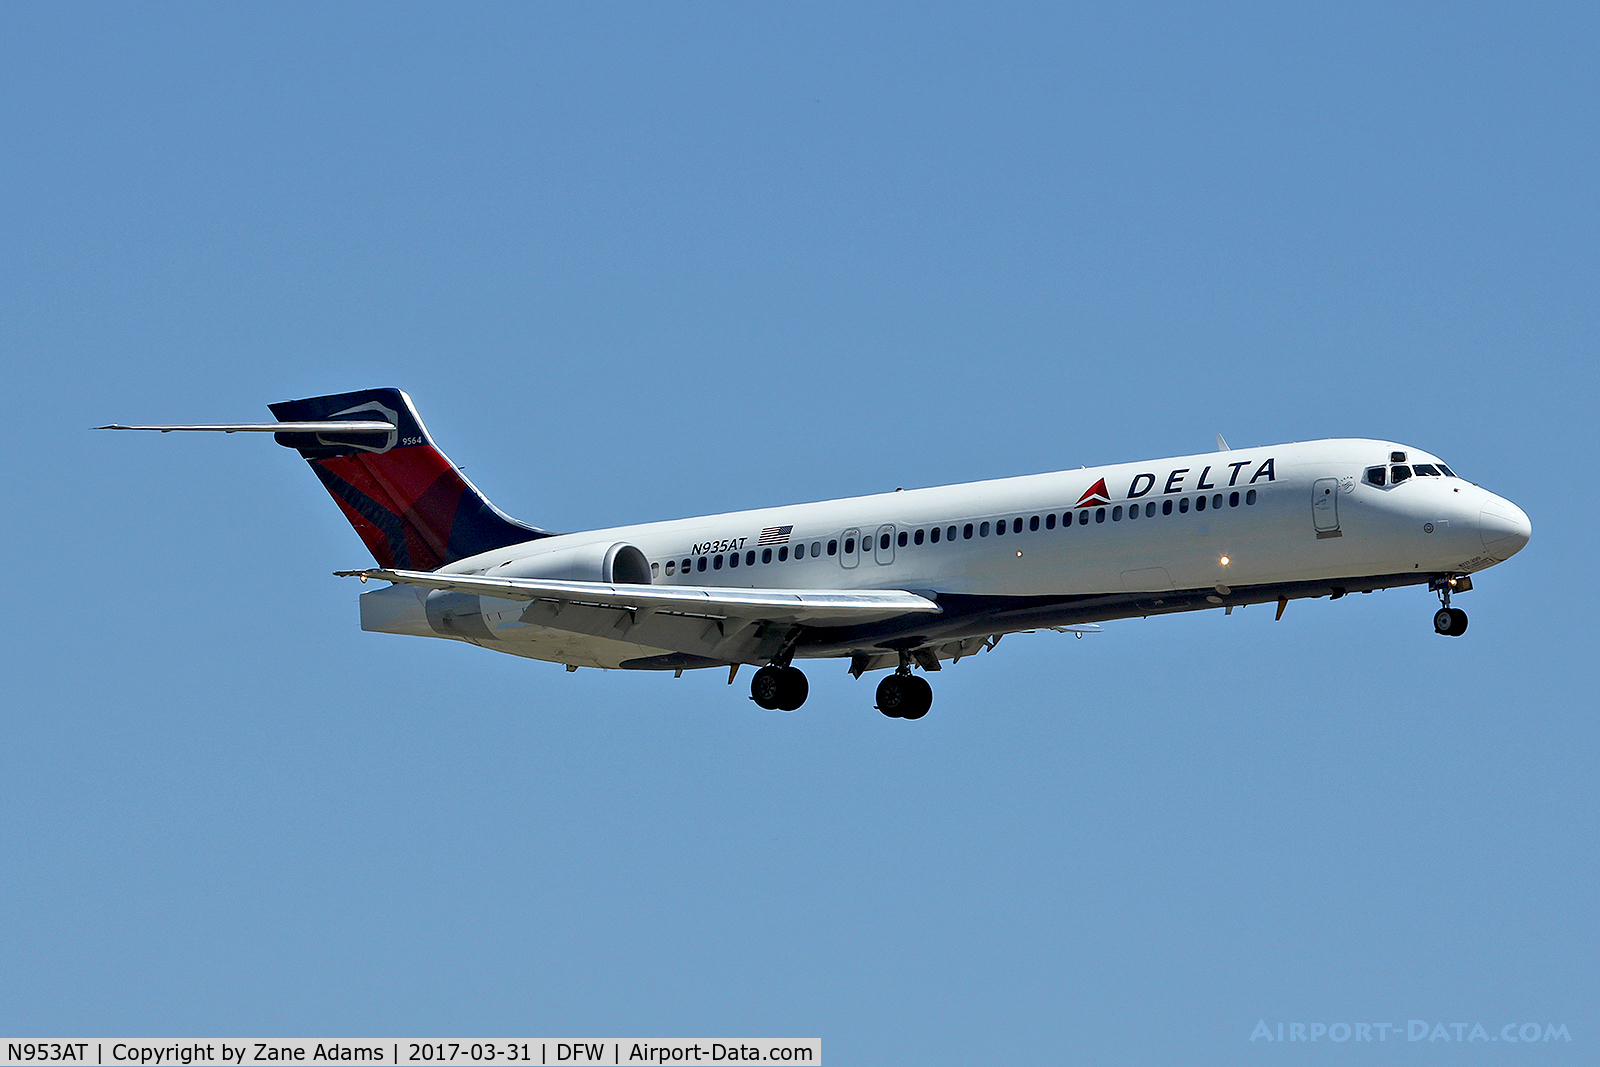 N953AT, 2000 Boeing 717-200 C/N 55015, Arriving at DFW Airport